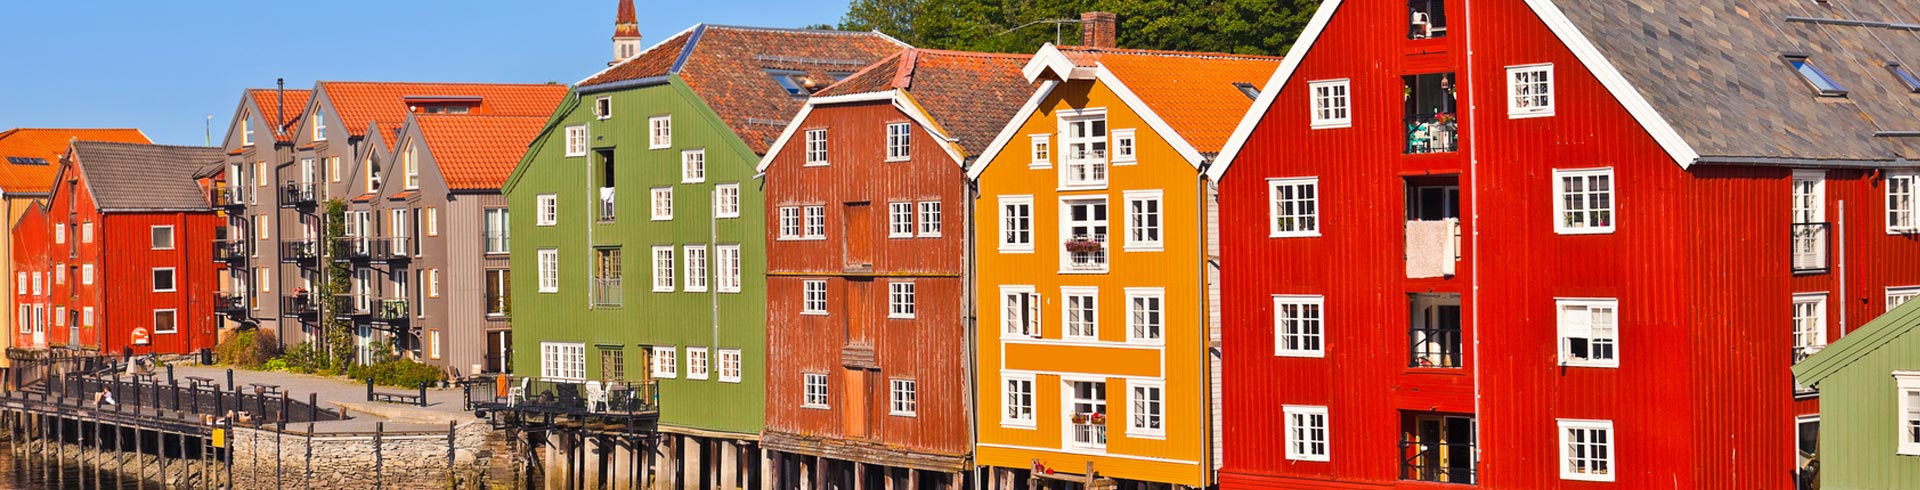 Maisons colorées typiques